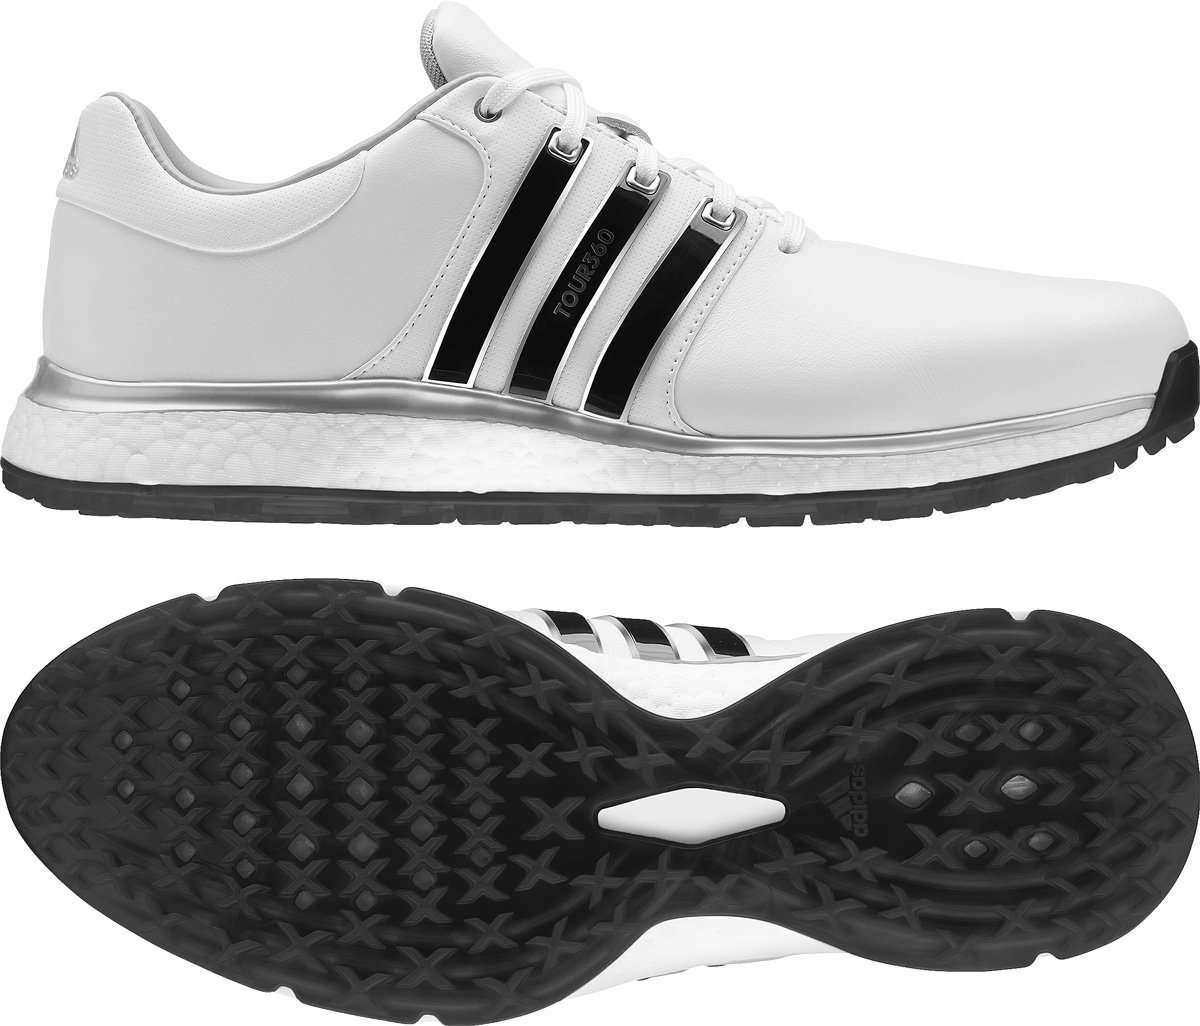 Adidas Tour 360 XT Spikeless Golf Shoes